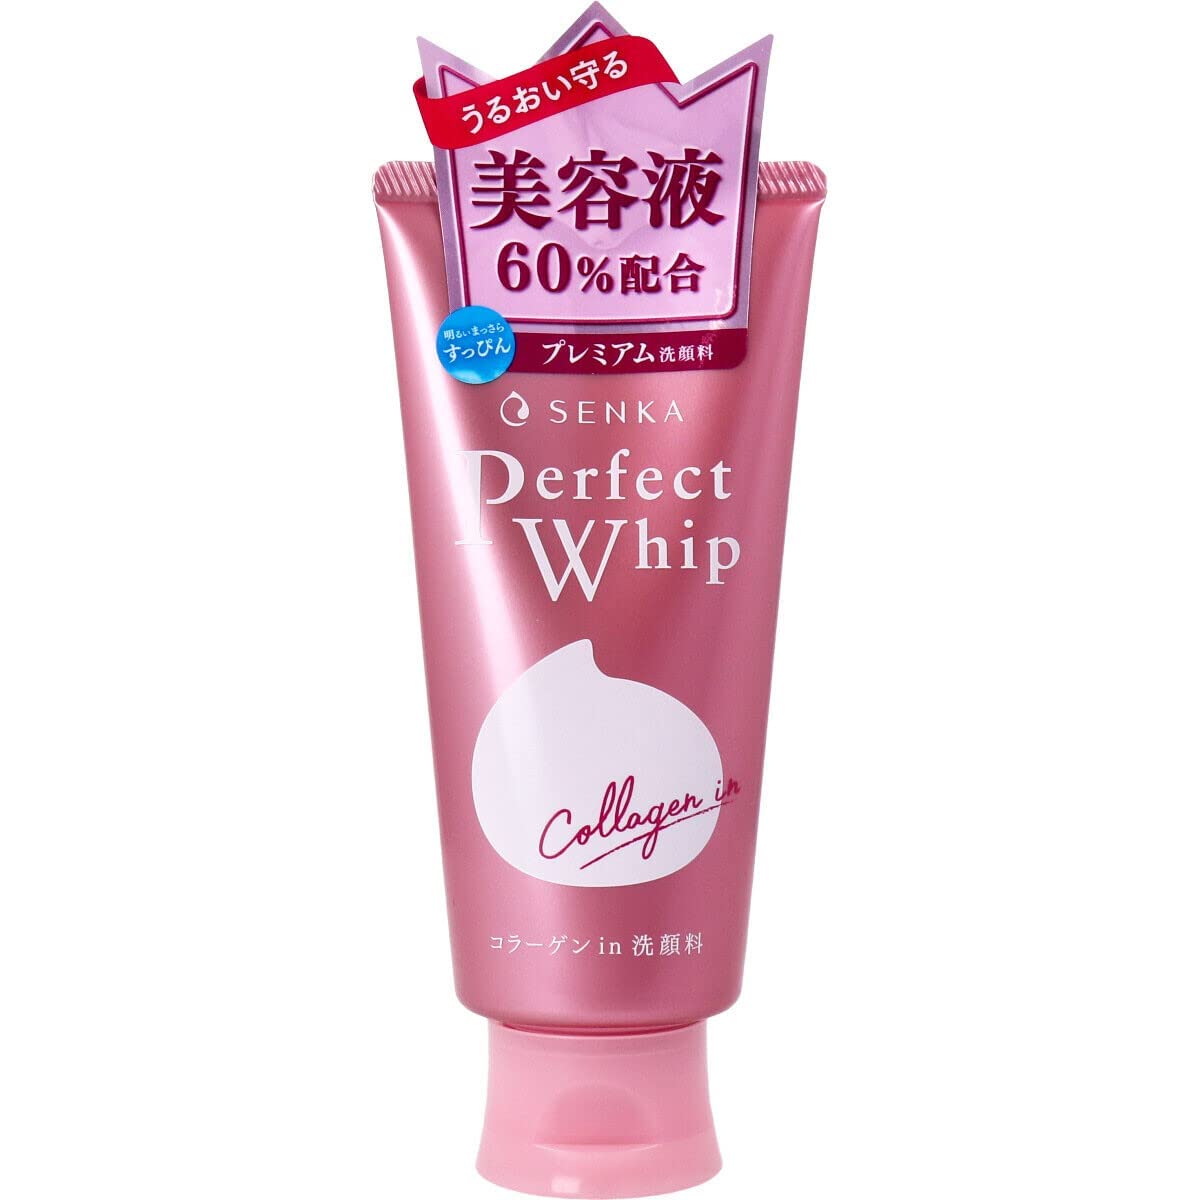 Shiseido Senka Perfect Whip Collagen In 120g